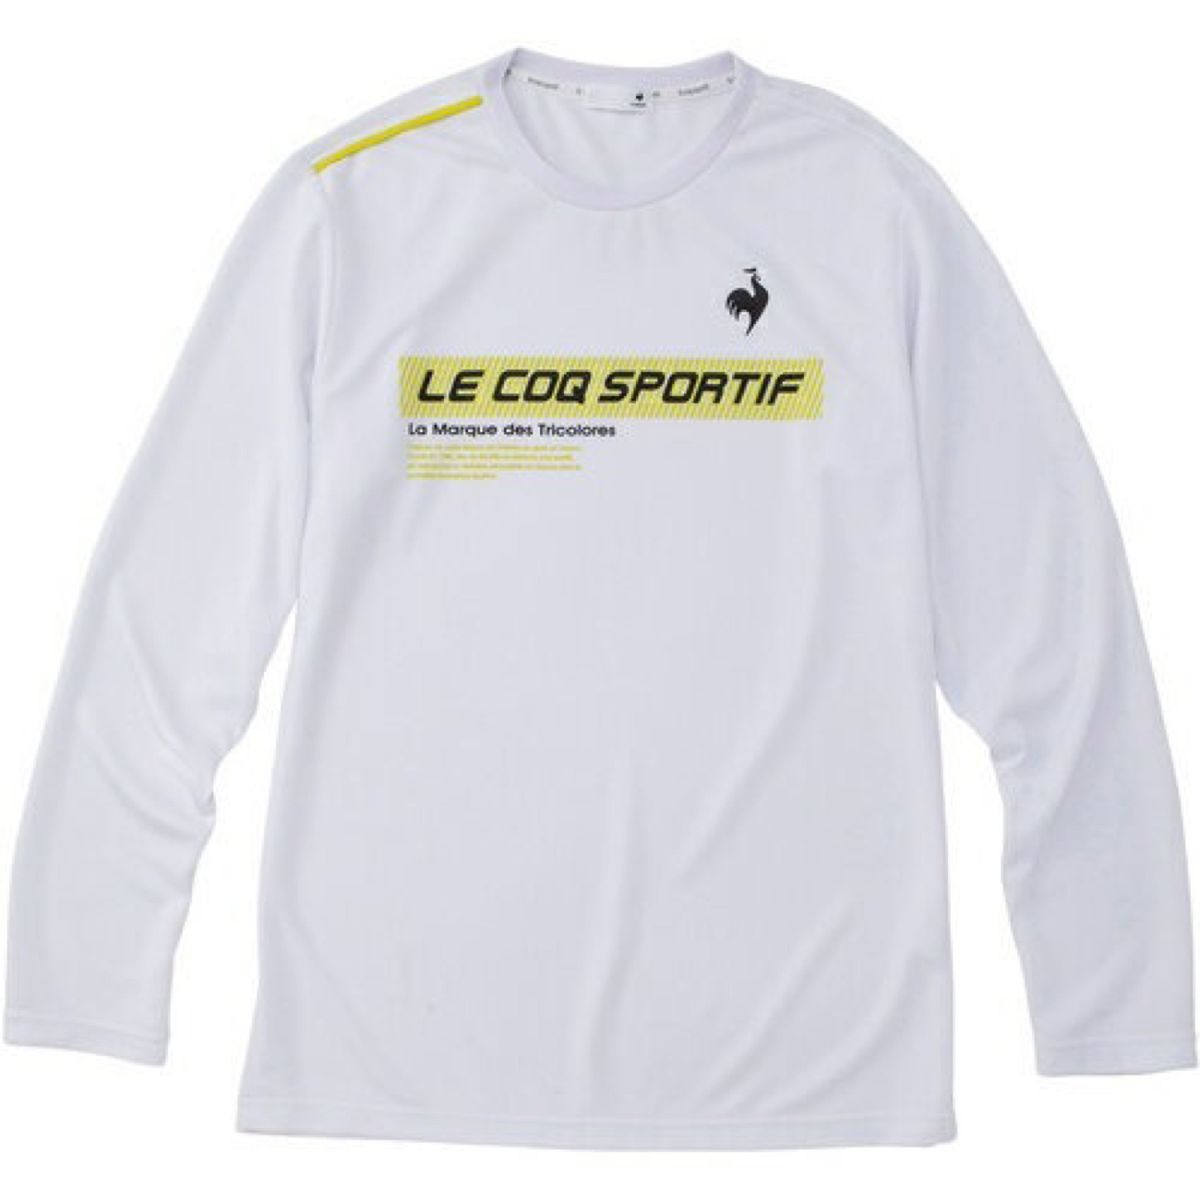 le coq sportif ルコックスポルティフ テニスウェア 長袖Tシャツ ホワイト(白色) QTMUJB00 メンズL 新品